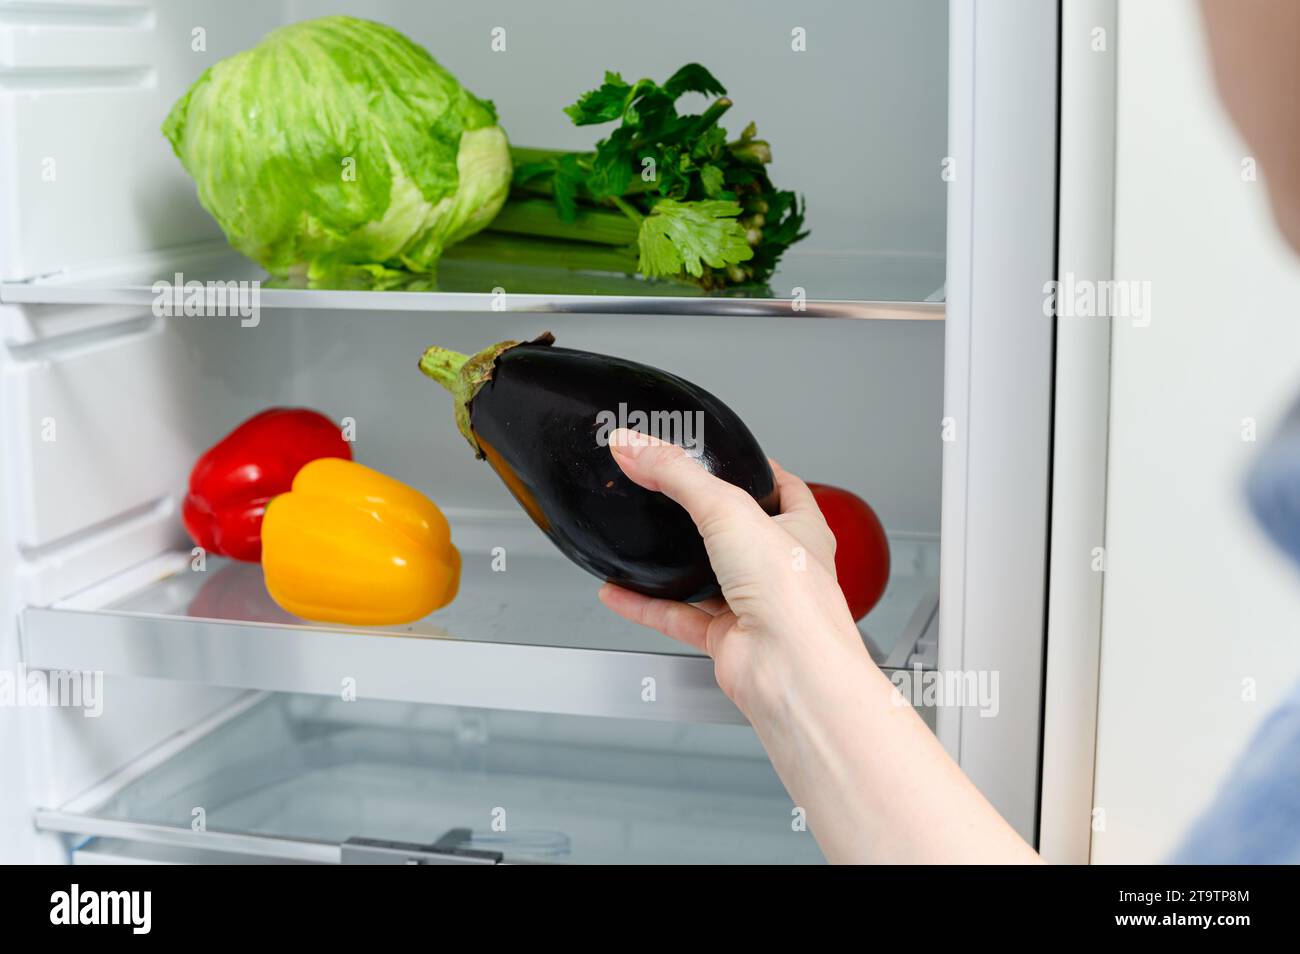 Une femme met une aubergine dans le réfrigérateur. Légumes frais couchés sur la clayette du réfrigérateur. Banque D'Images